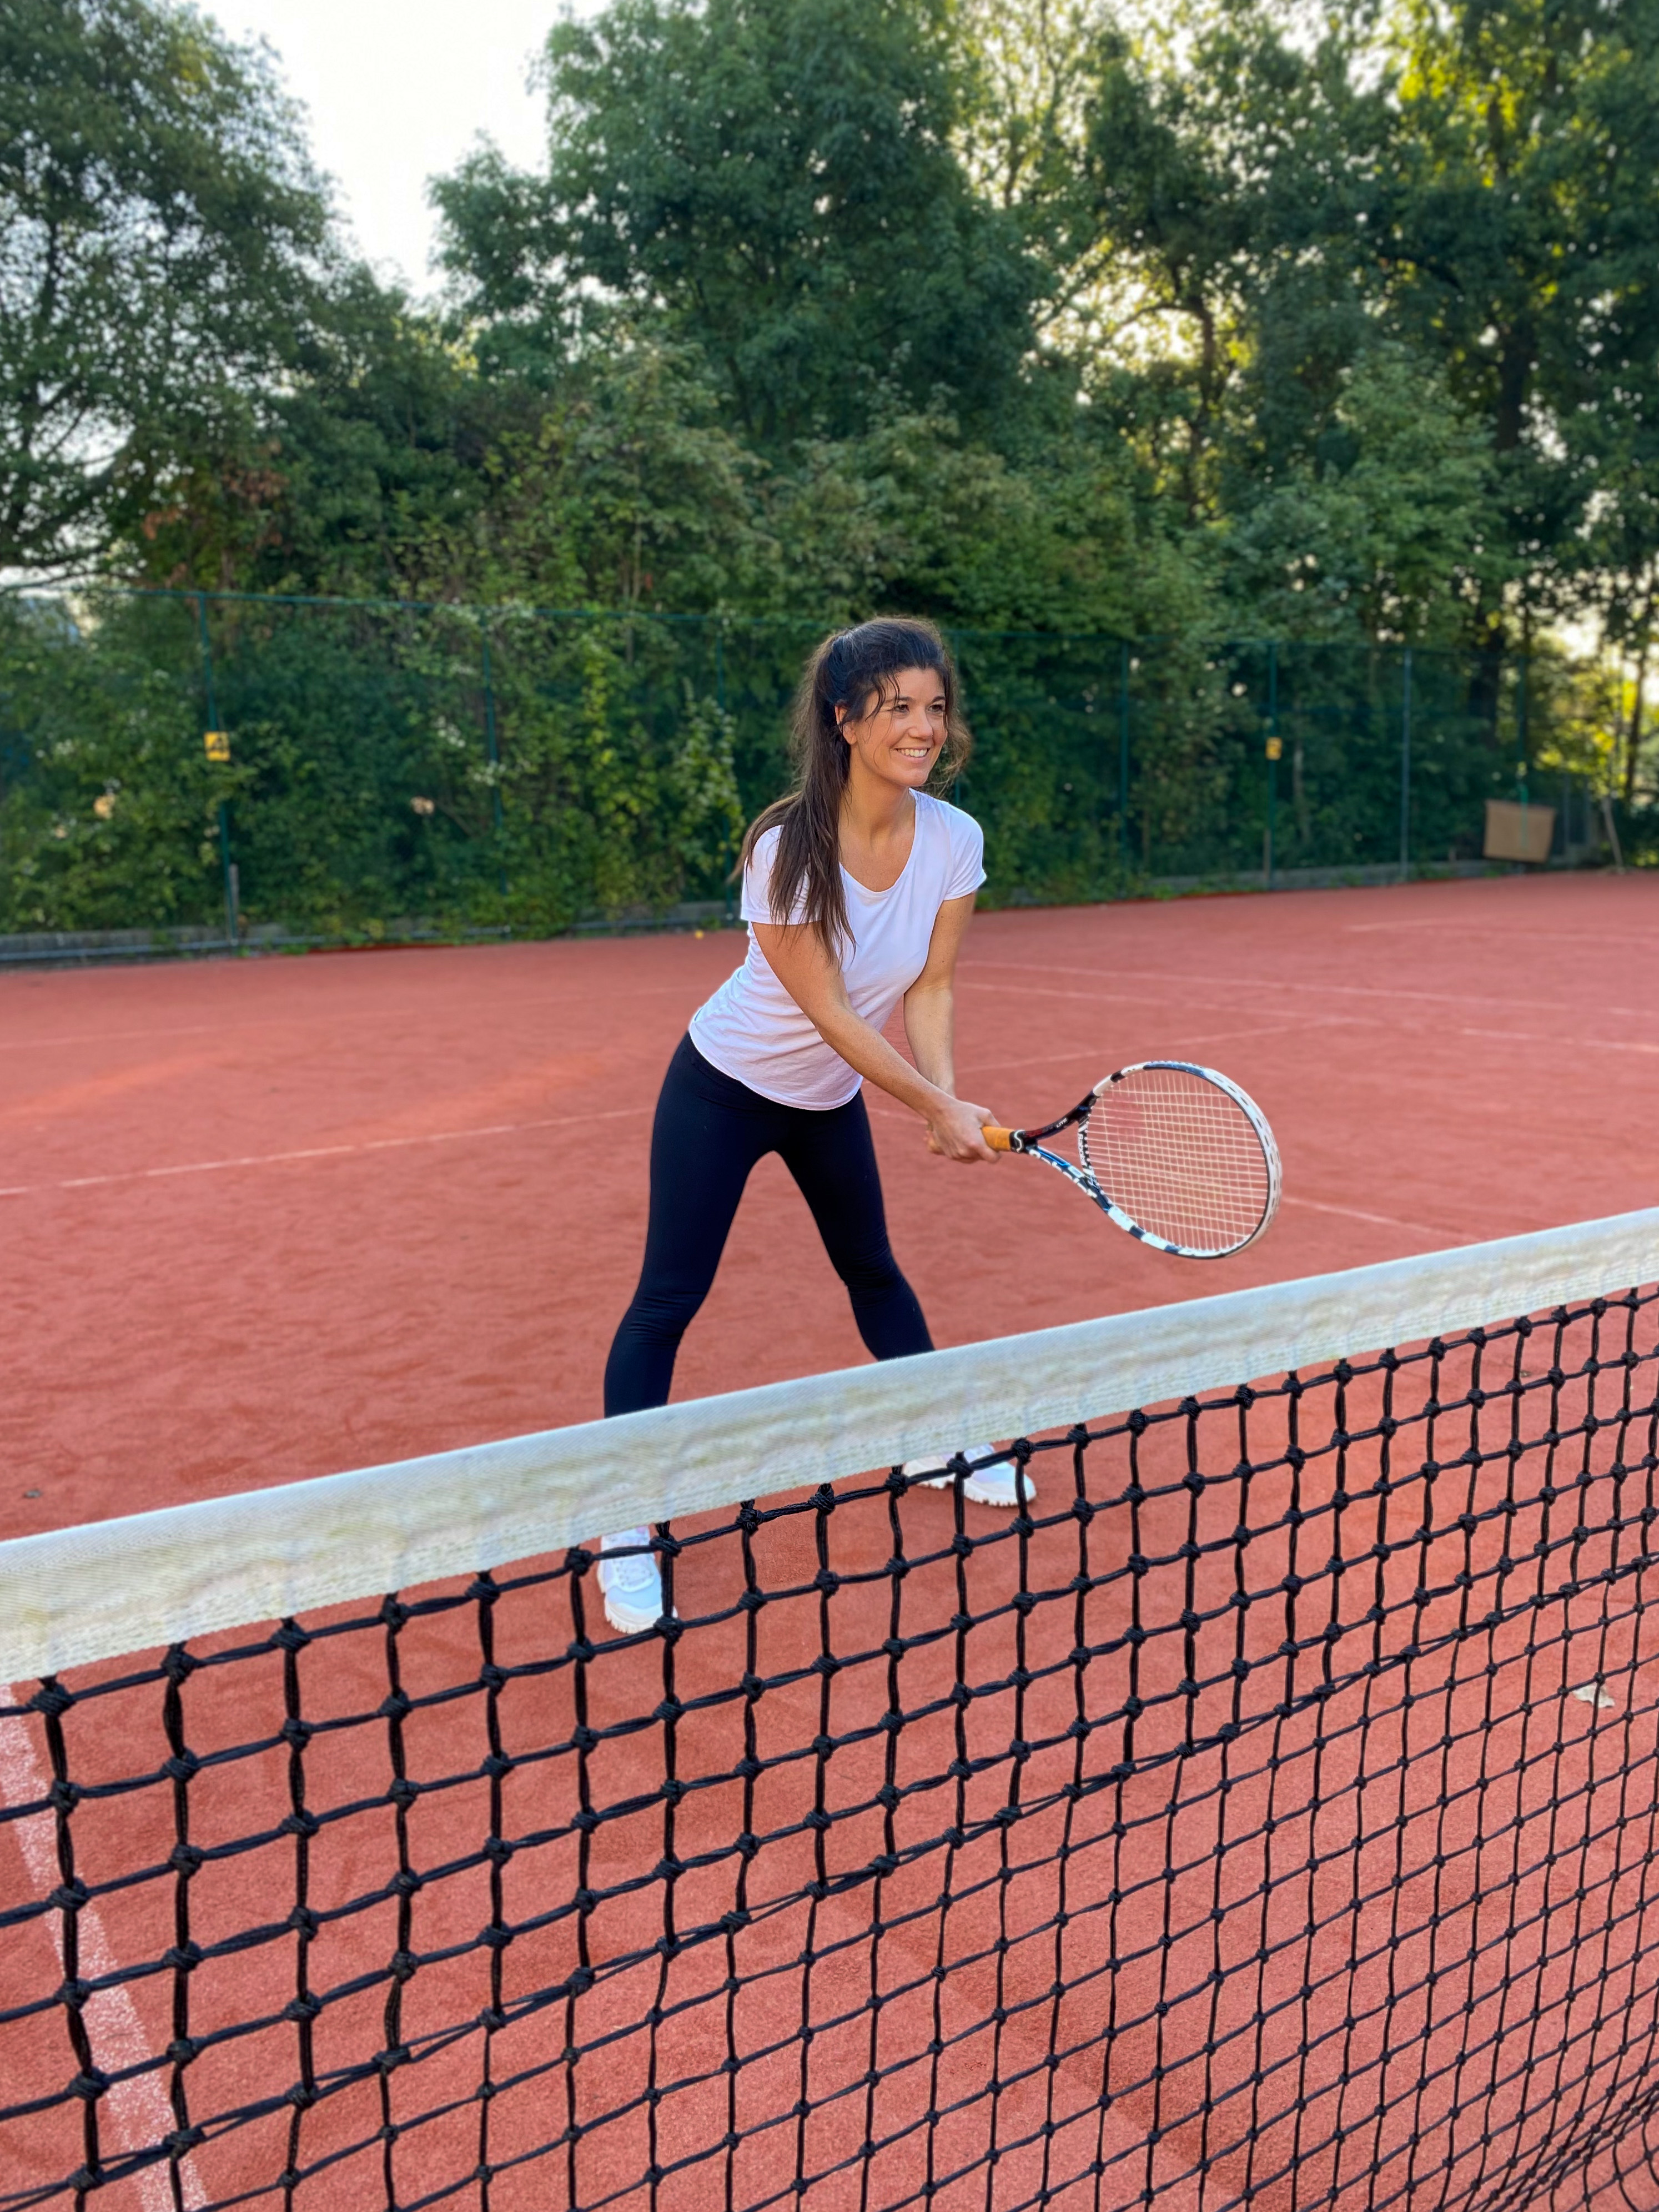 Luxe Avonturier haar Beginnen met tennis lessen op latere leeftijd - Daily Nonsense